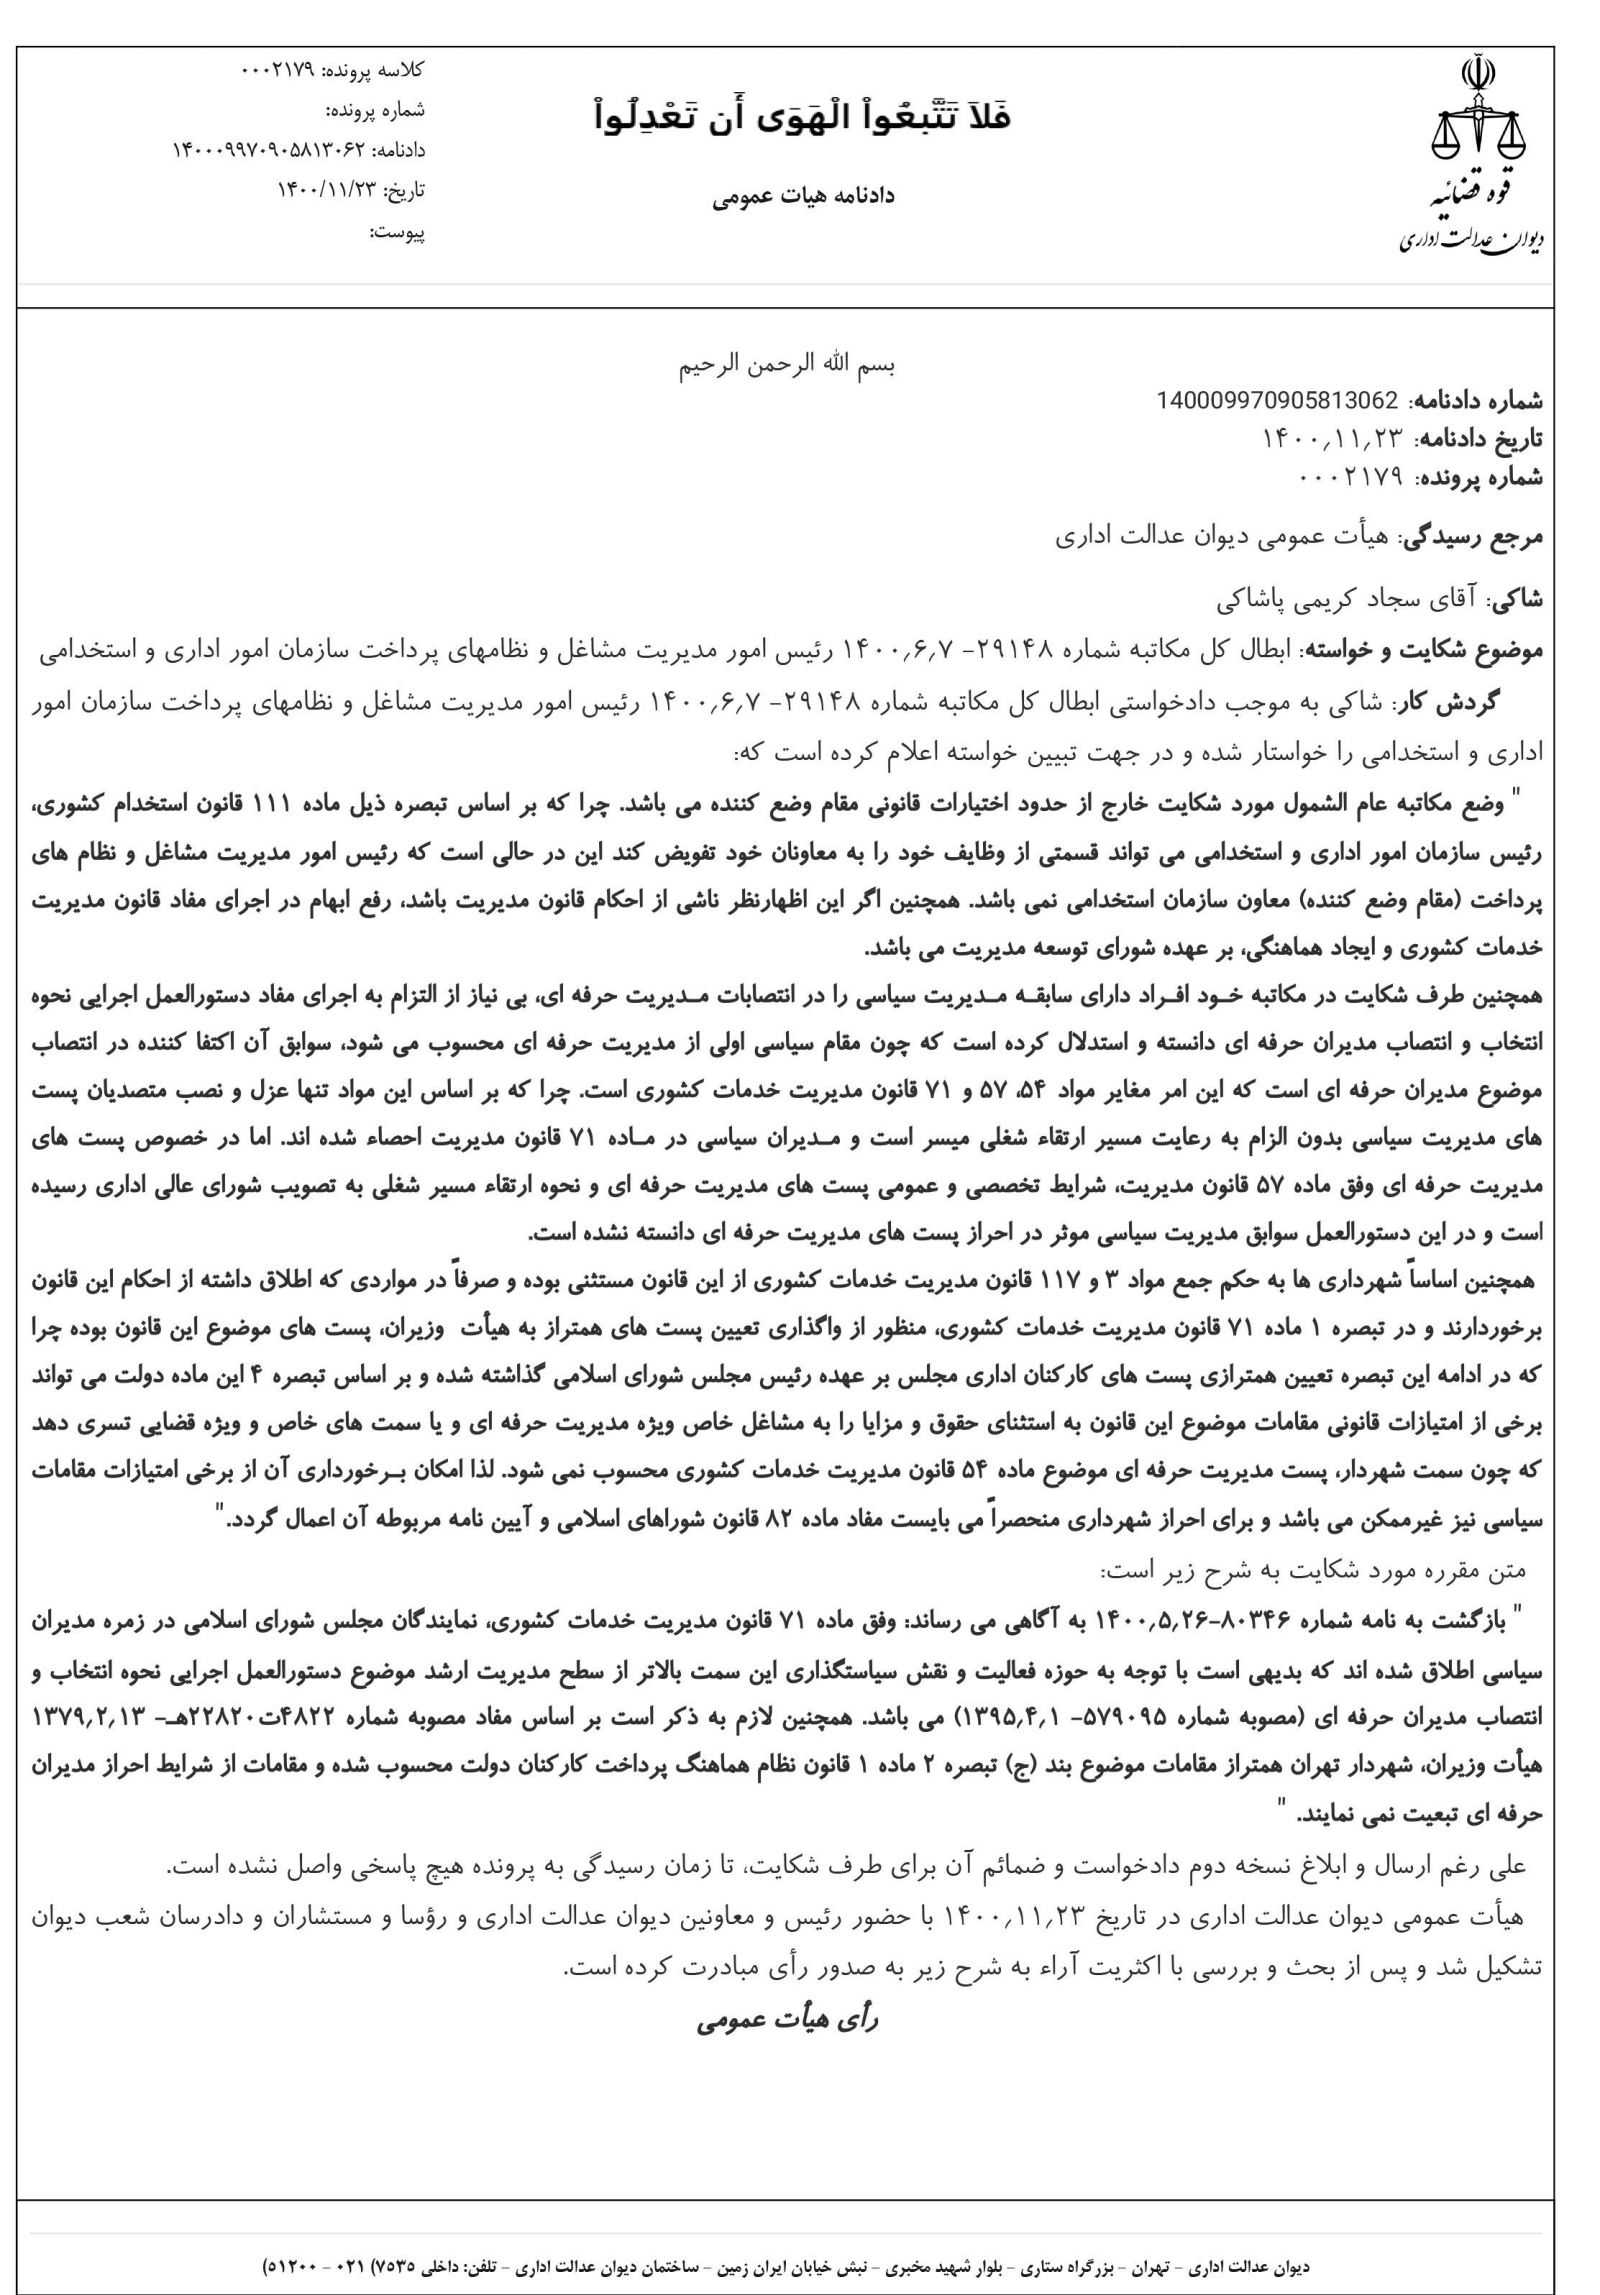 حکم شهردار تهران